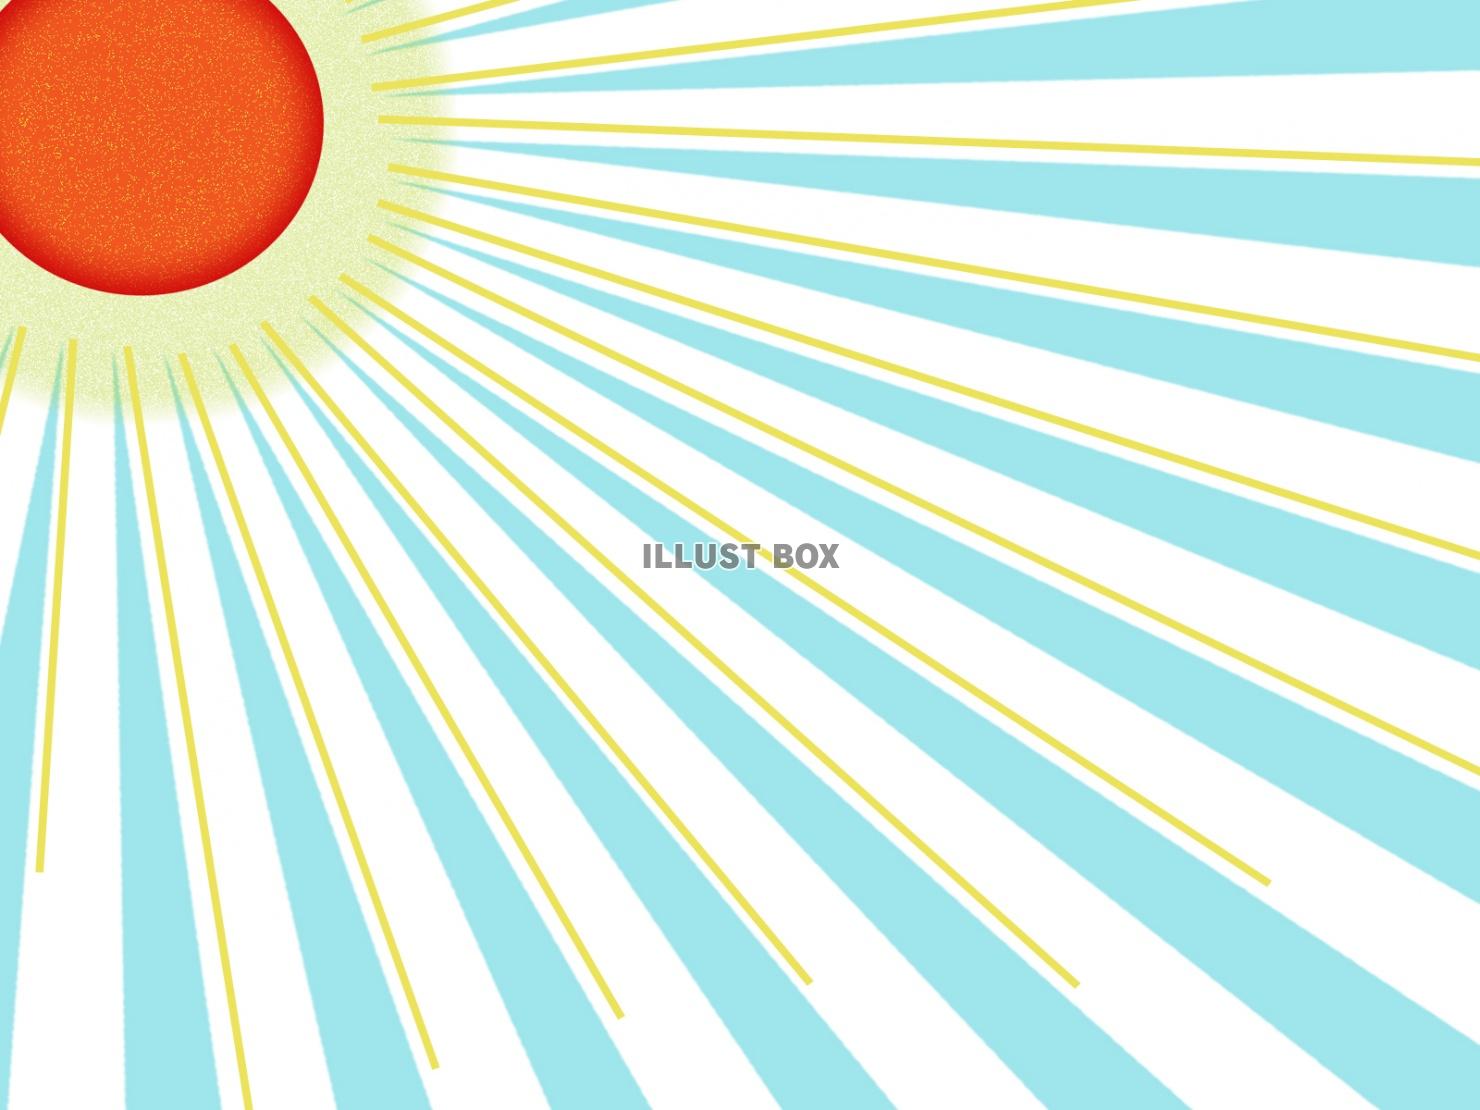 JPEG:太陽の光と集中線のコラボ背景